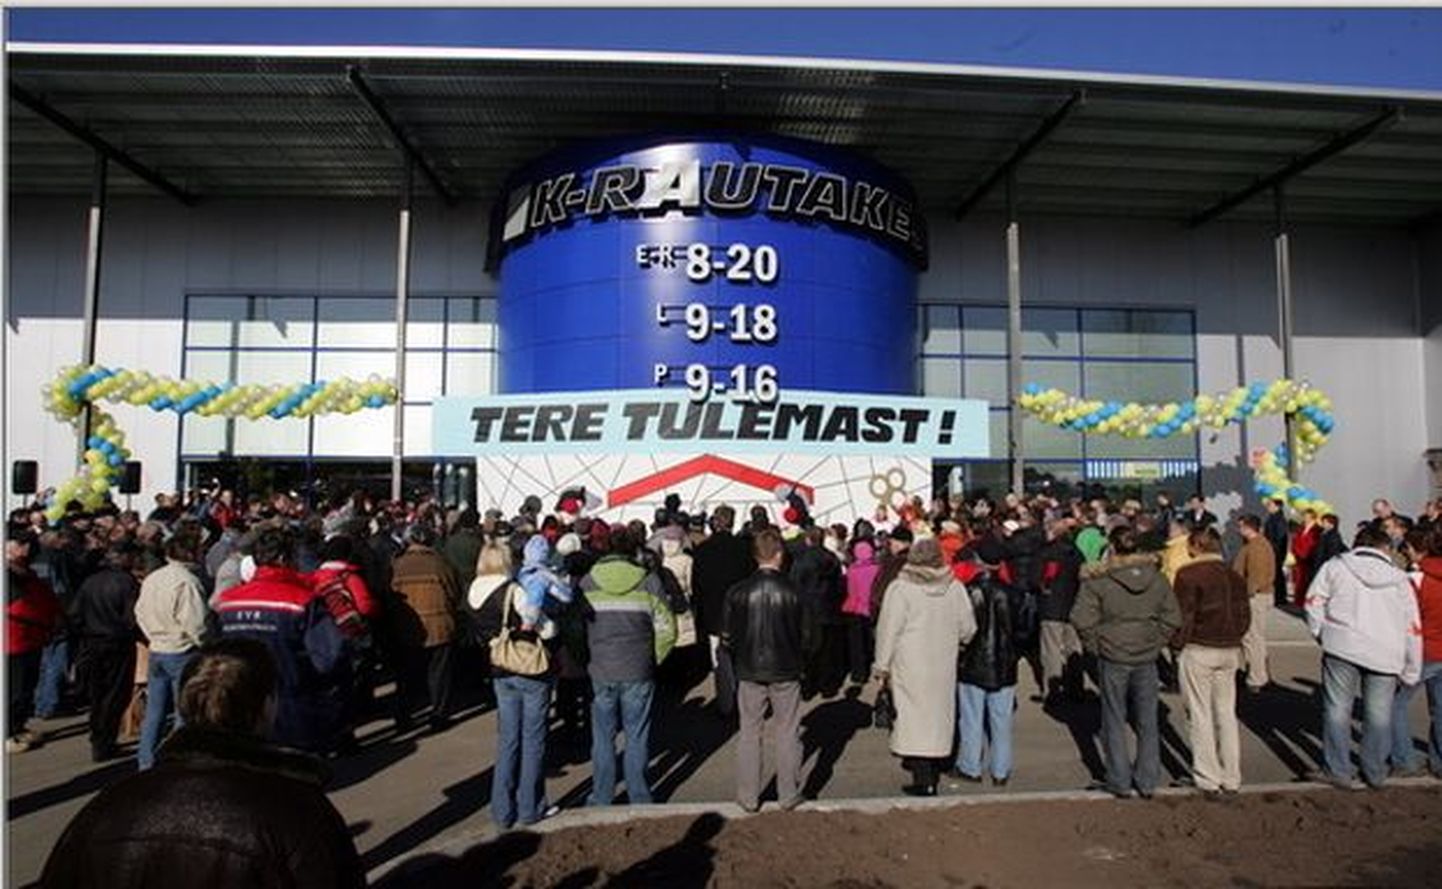 K-Rautakesko poe avamine Tallinnas A.T. Tammsaare teel kaks aastat tagasi